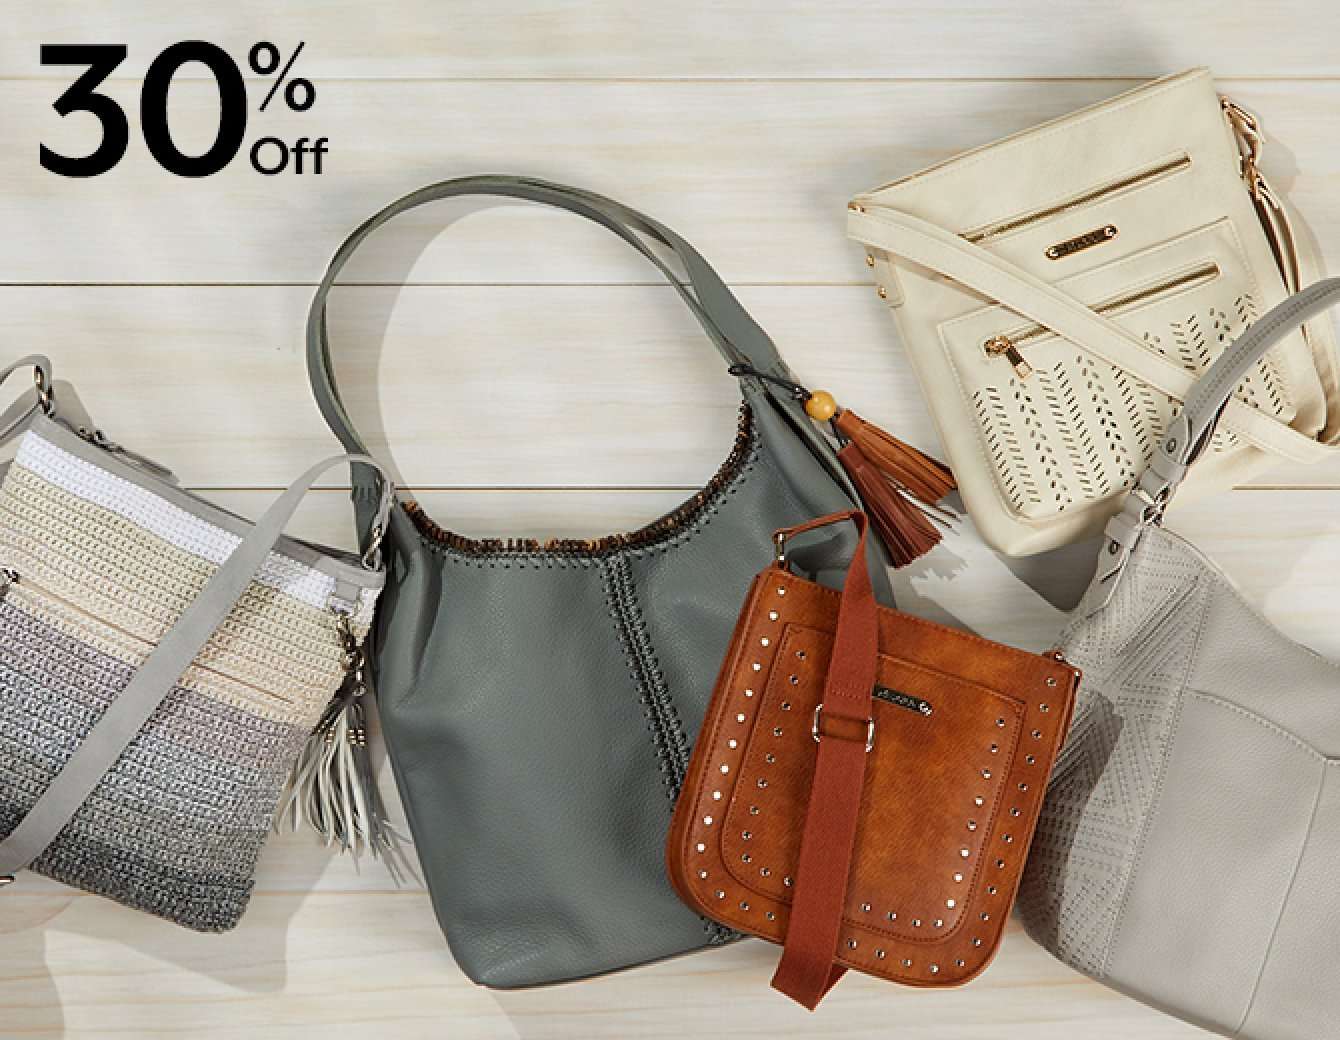 30% off fashion handbags